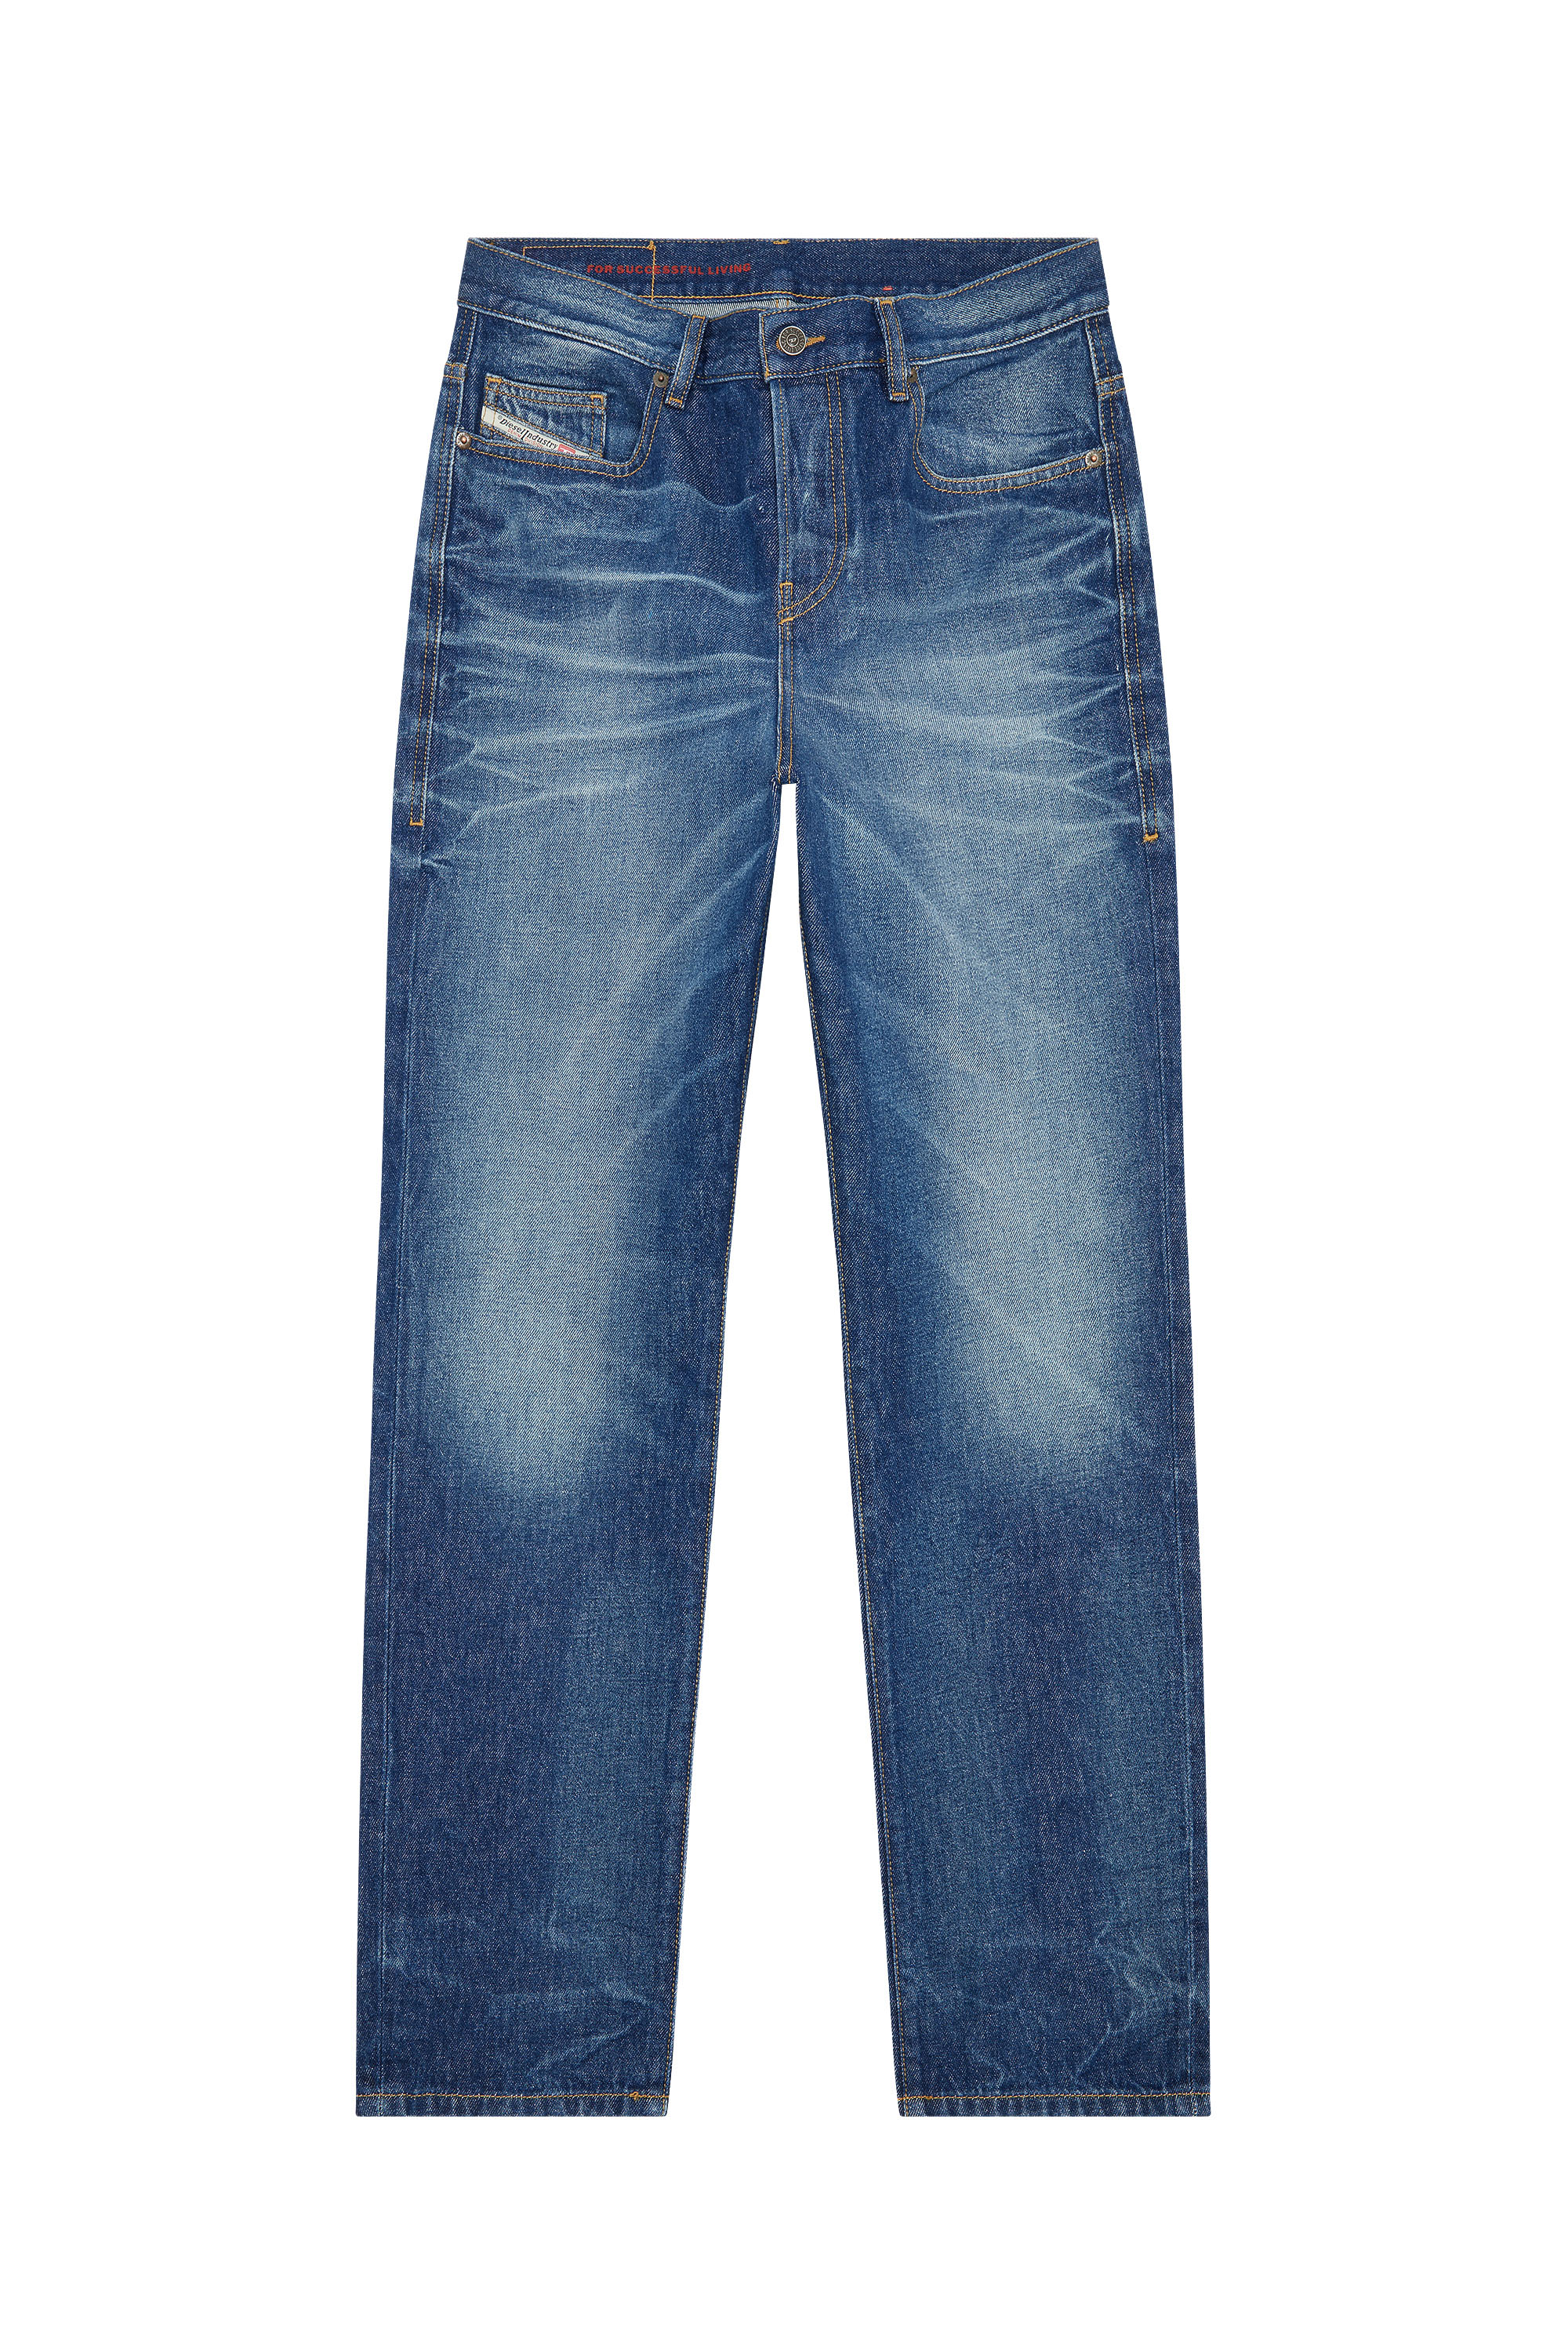 Diesel - Straight Jeans 2020 D-Viker E9B85,  - Image 6